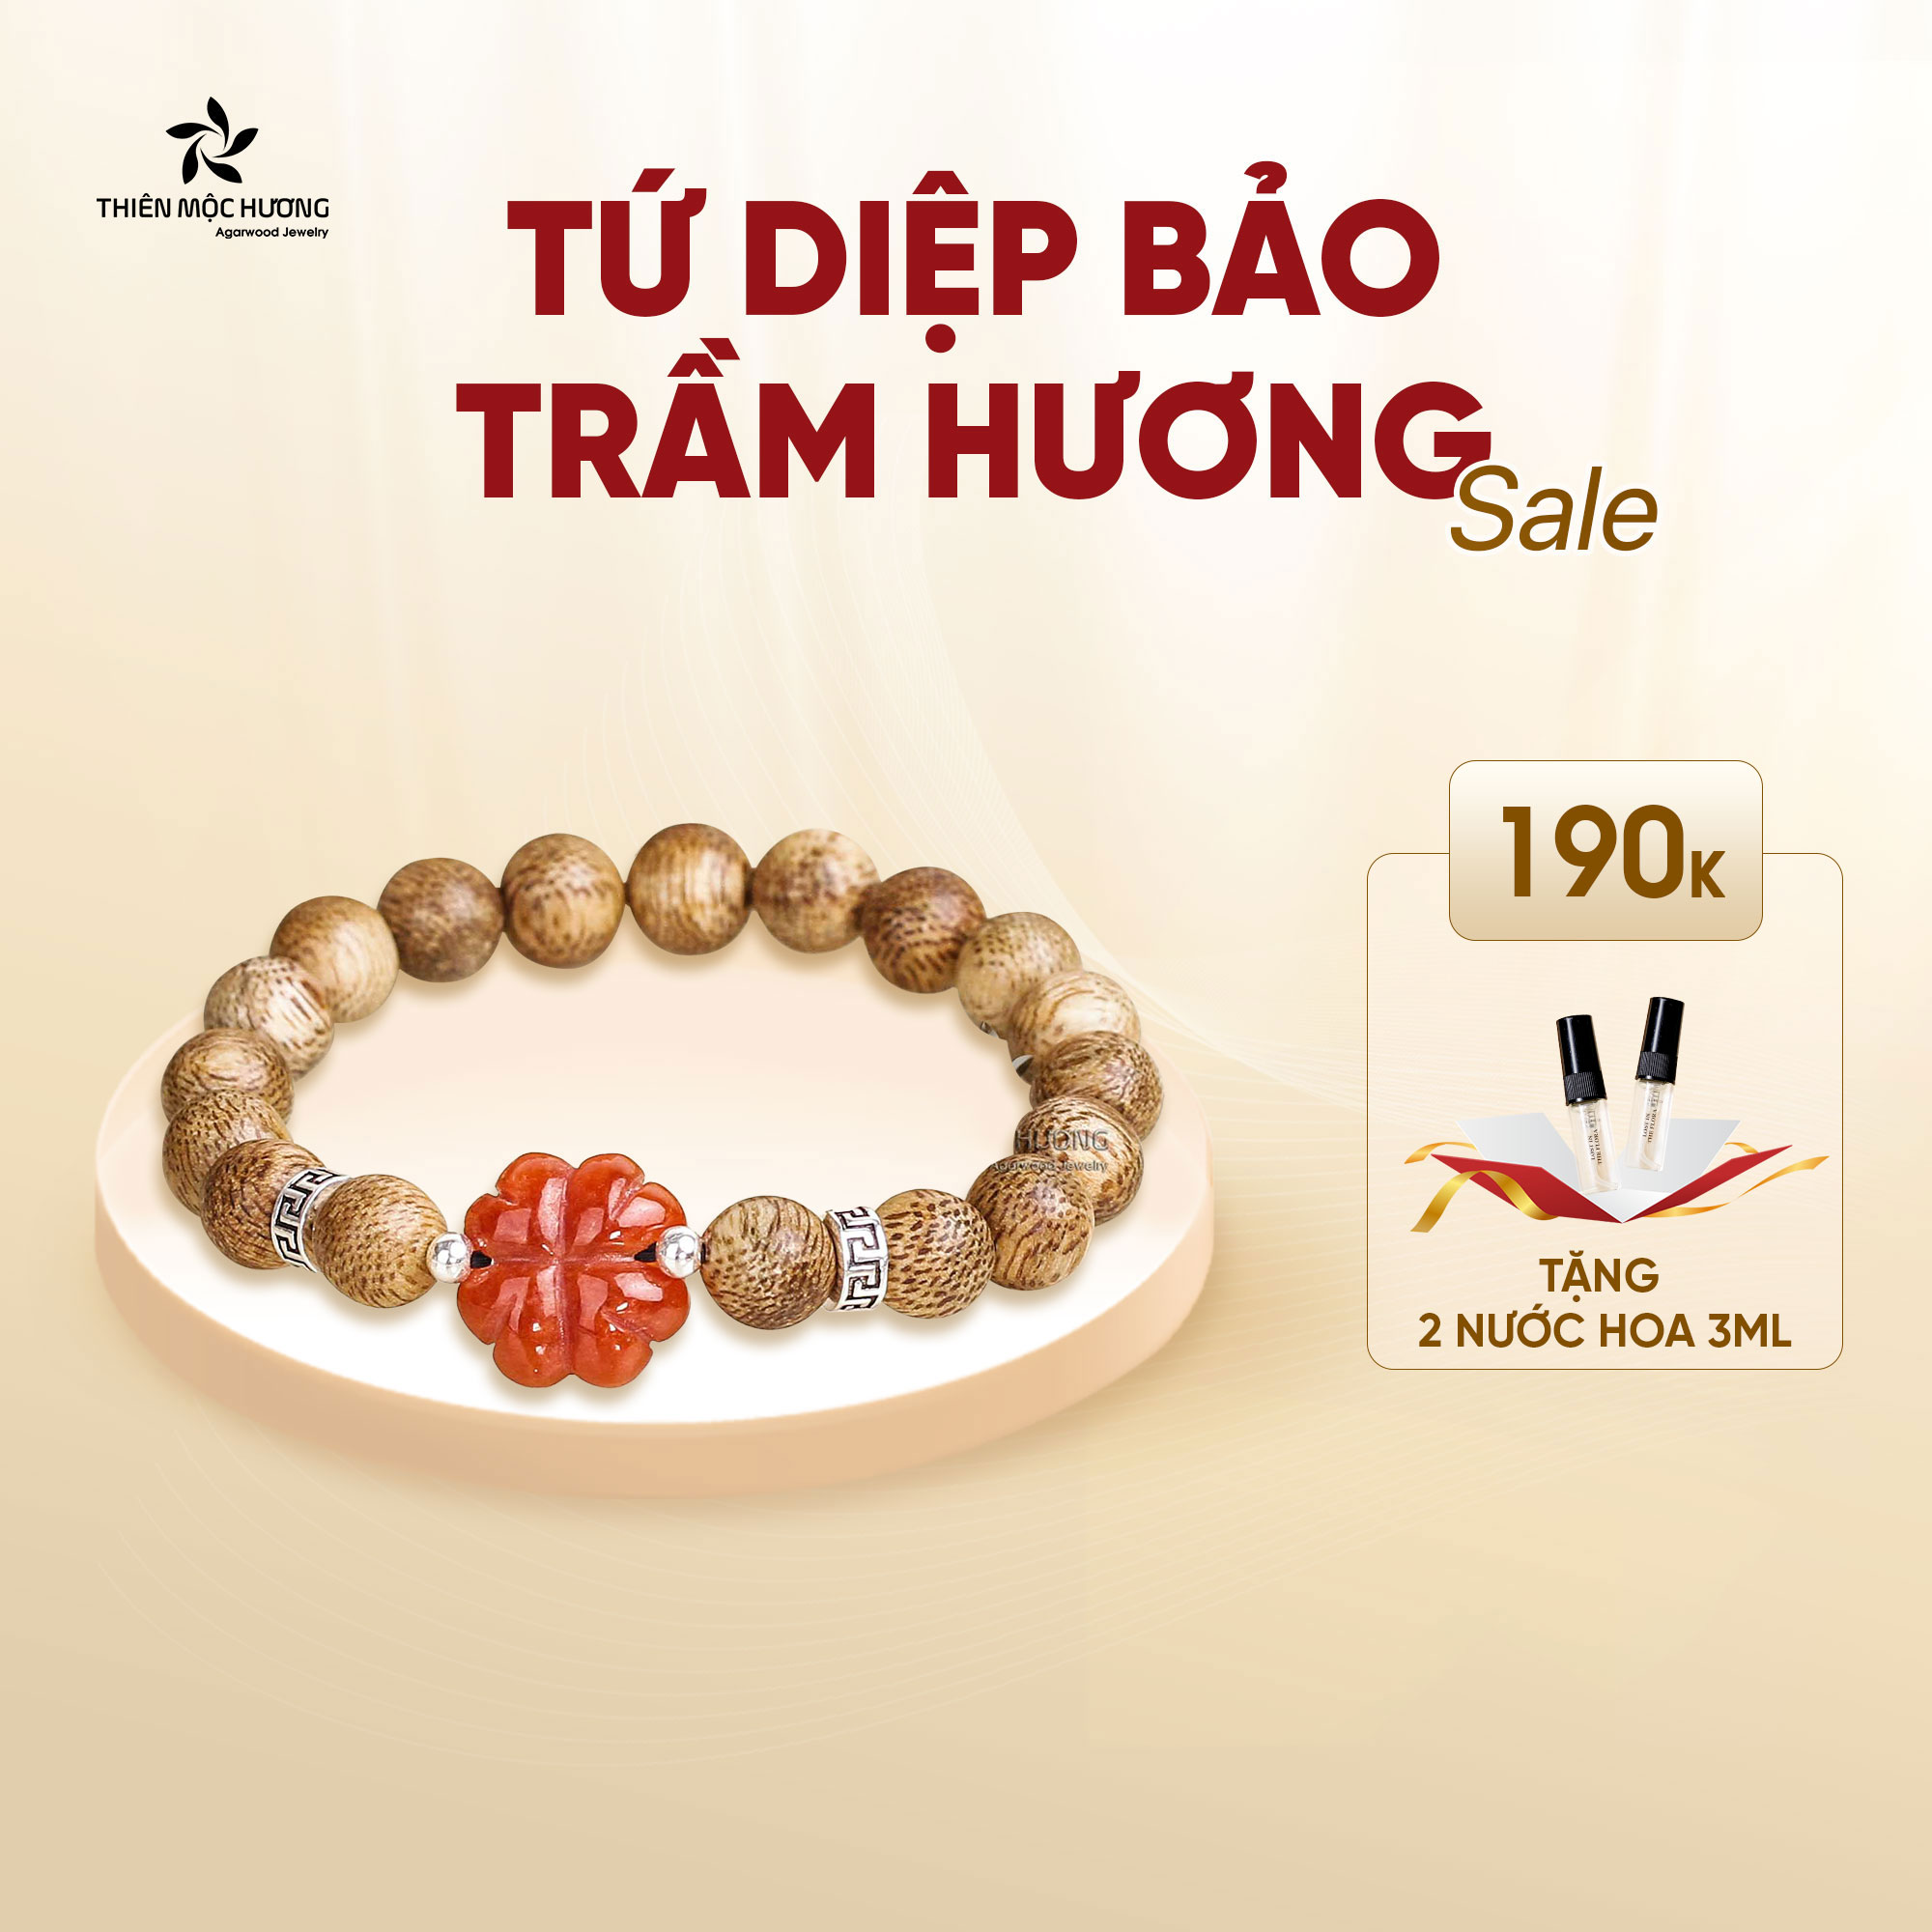 Vòng tay Trầm Hương Tứ Diệp Bảo - Charm bạc 925 và đá phong thủy - Trầm Tốc Việt Nam - Thiên Mộc Hương